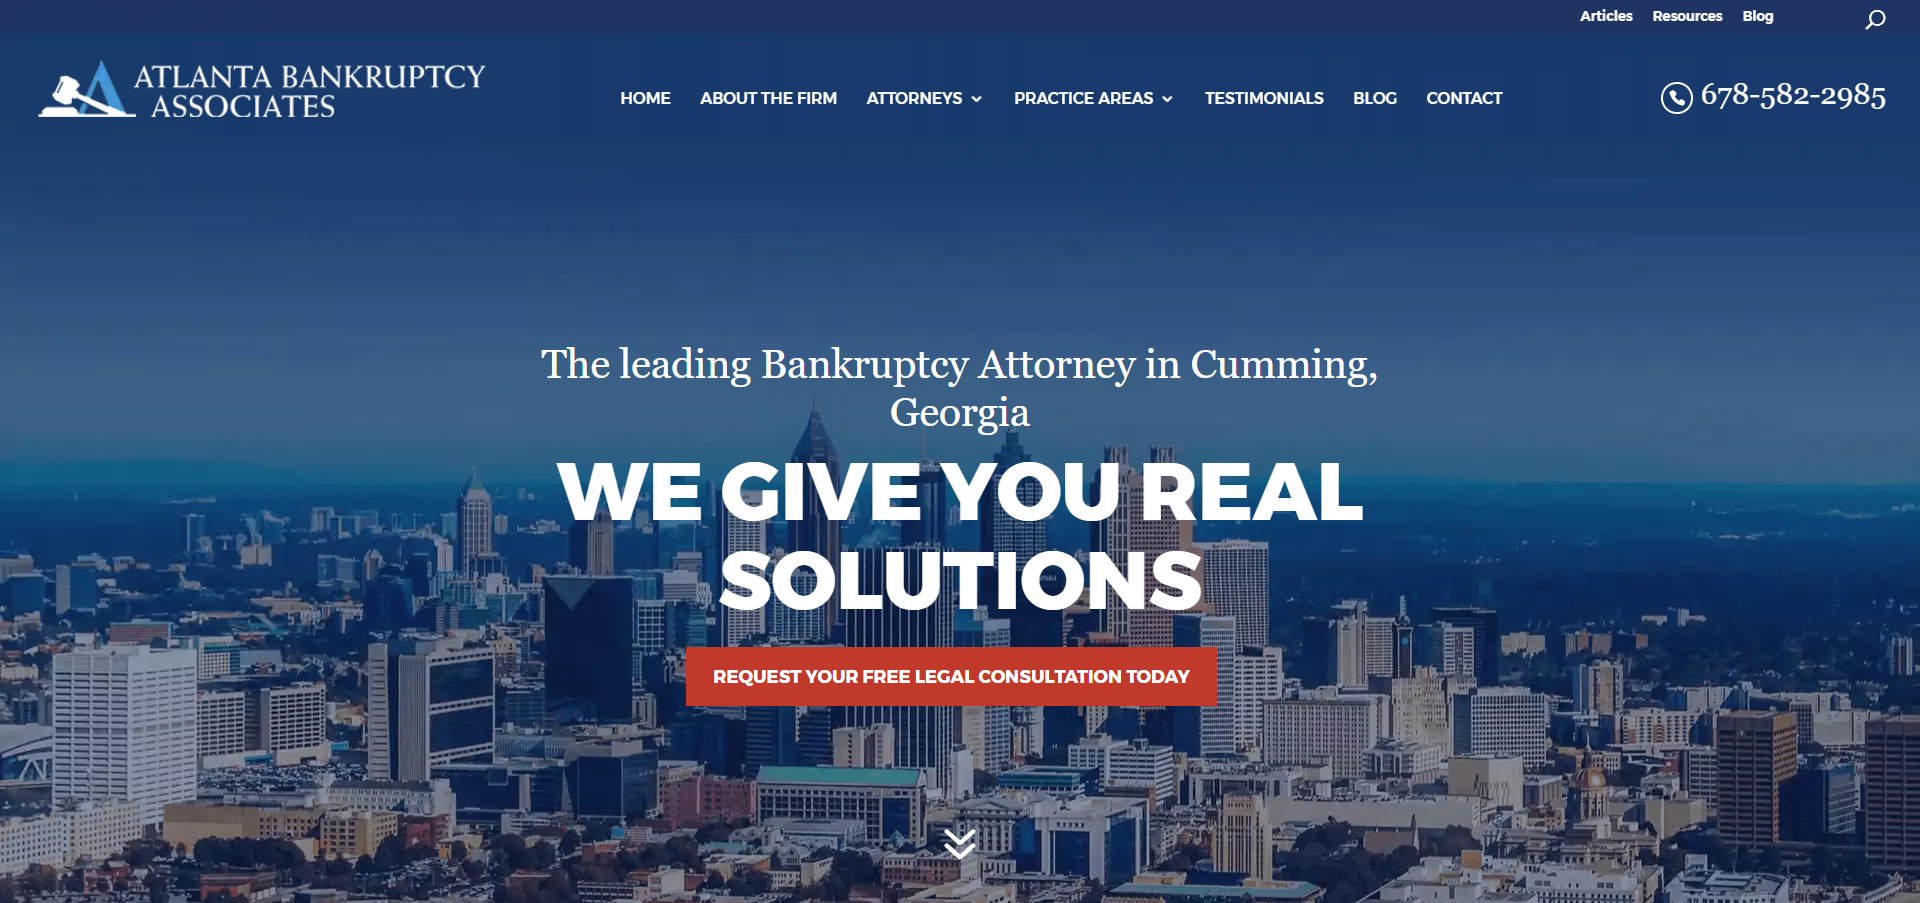 Atlanta Bankruptcy Associates